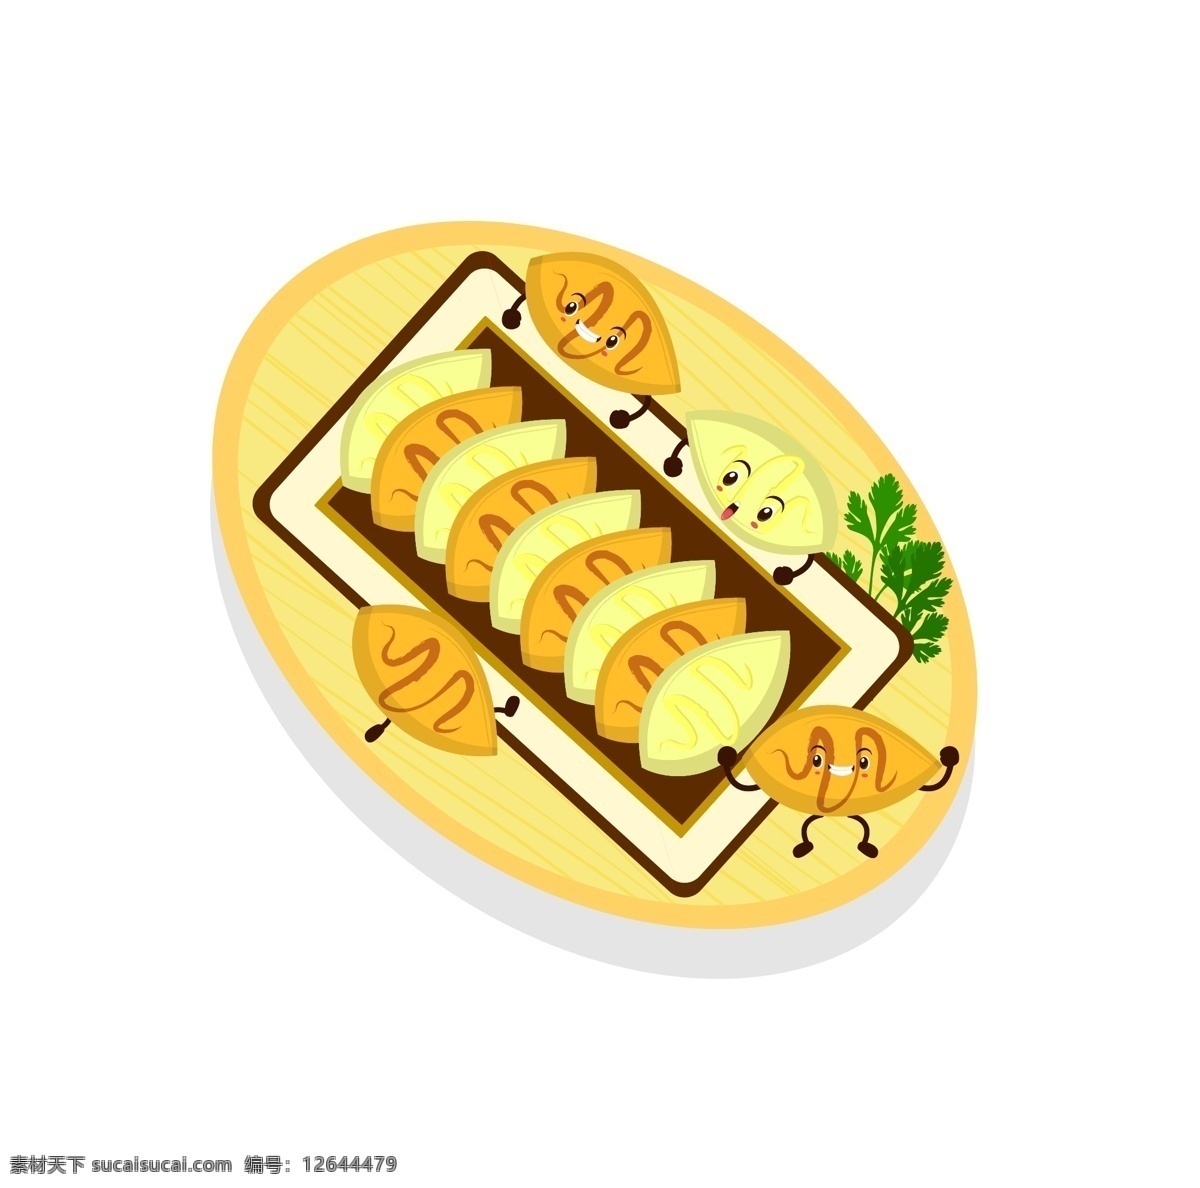 饺子 食物 原创 中国 传统 美食 卡通 矢量 文件 特色美食 中国传统美食 可爱 表情